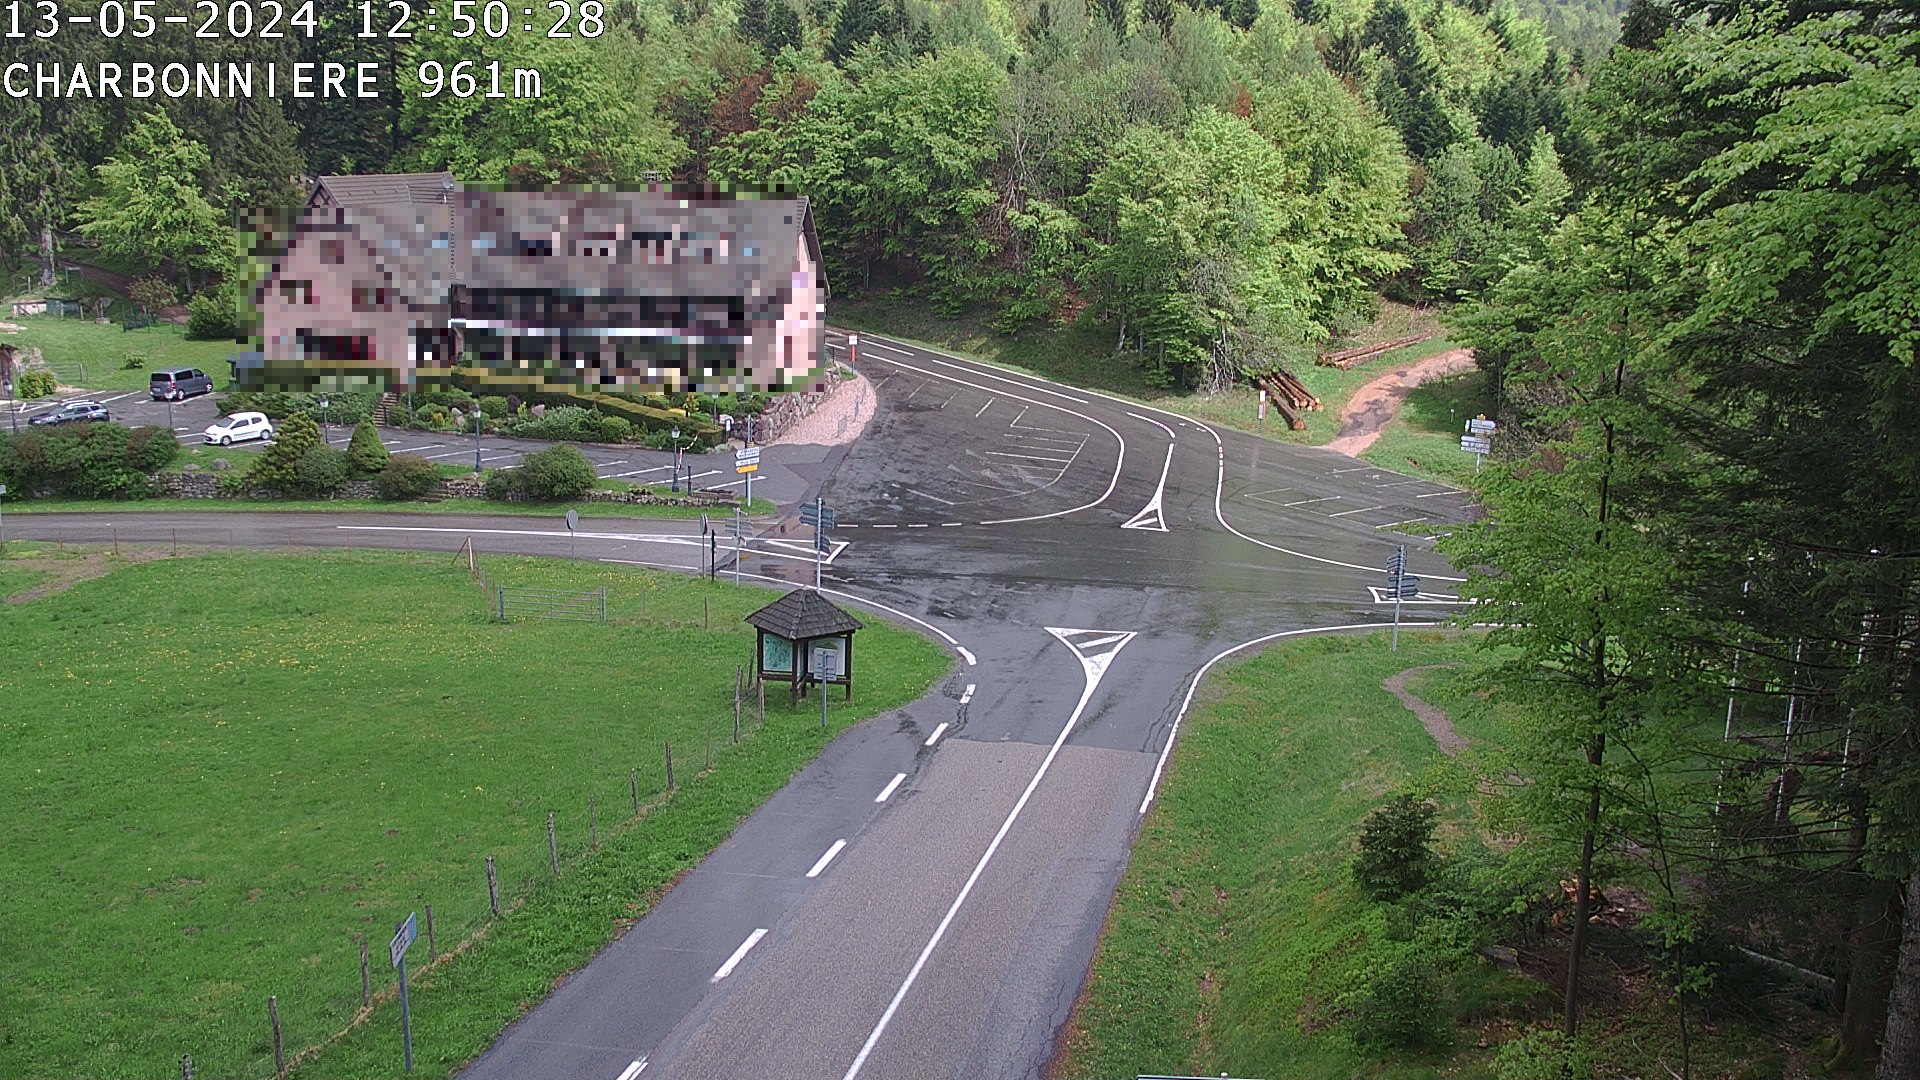 Webcam du col de la Charbonnière dans les Vosges en direction de la station du Champ du feu. Vue sur le D214 et la Tour du Champ du feu. Col de montagne à 961 mètres d'altitude